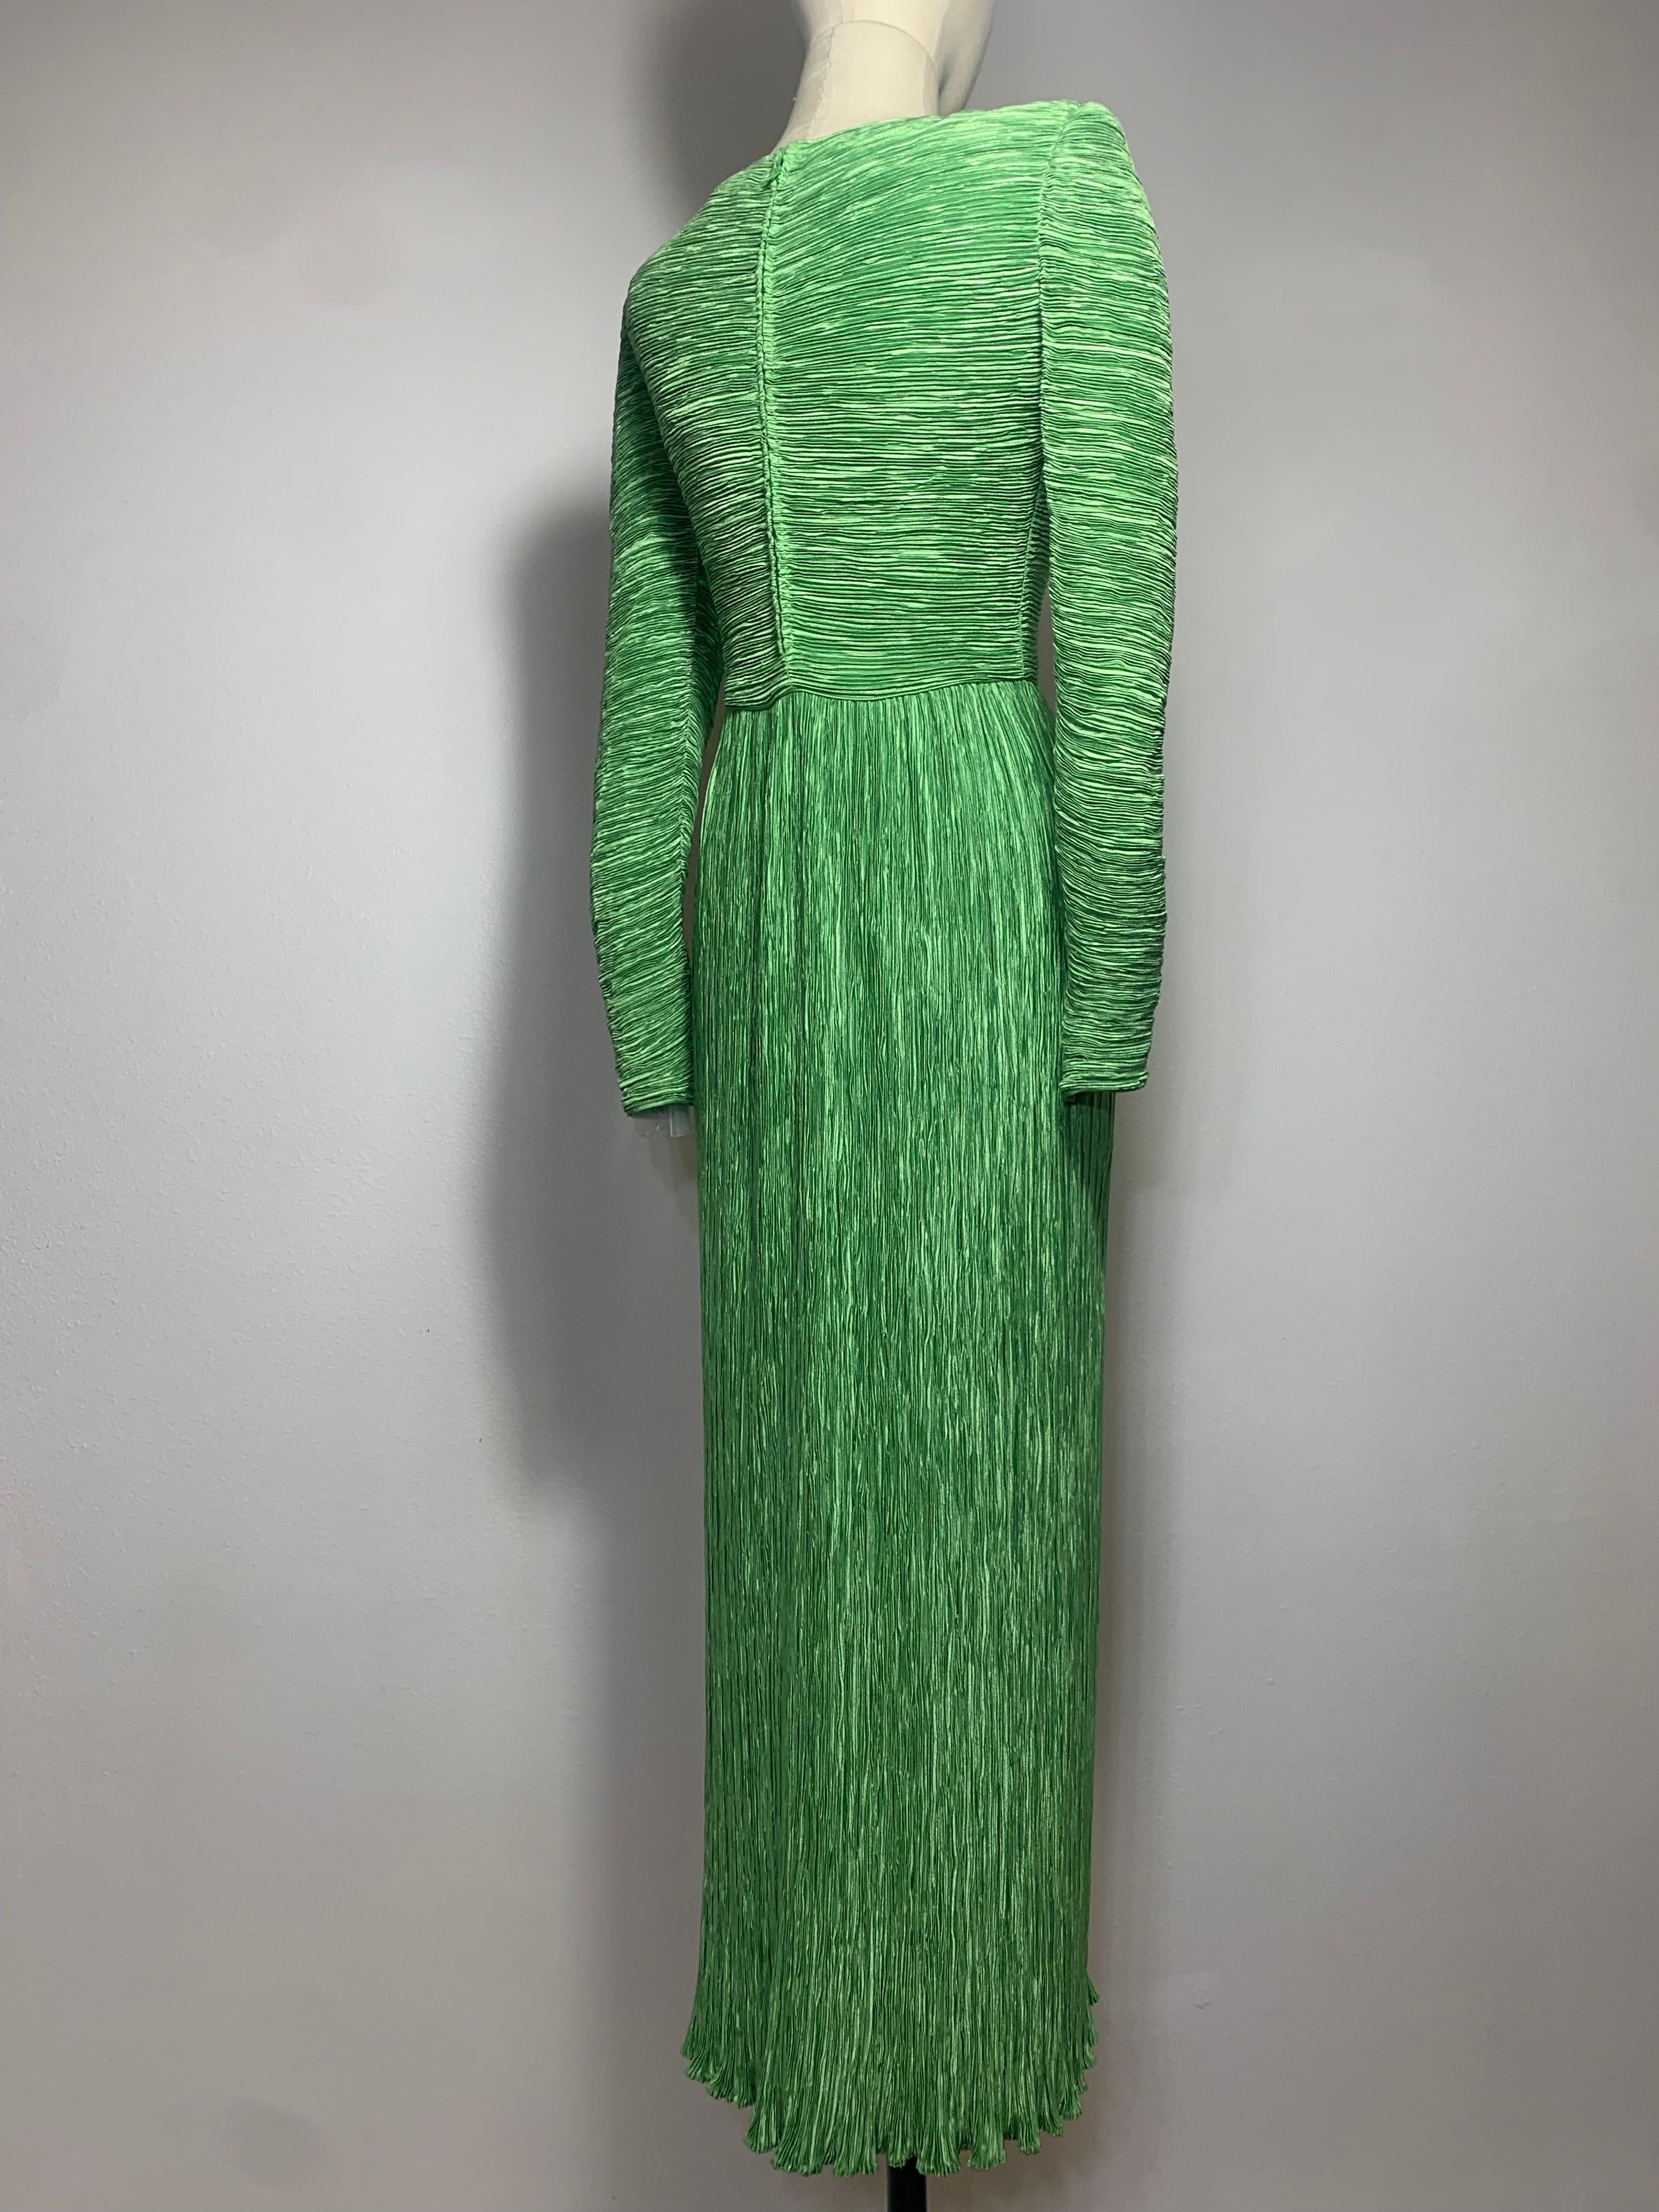 1980er Mary McFadden Jadegrünes Fortuny-Stil Seidensäulenkleid mit langen Ärmeln:  Charakteristischer McFadden-Stil mit asymmetrisch drapiertem Mieder und langen, spitz zulaufenden Ärmeln. Das Oberteil ist gefüttert, der Rock ist nicht gefüttert, um